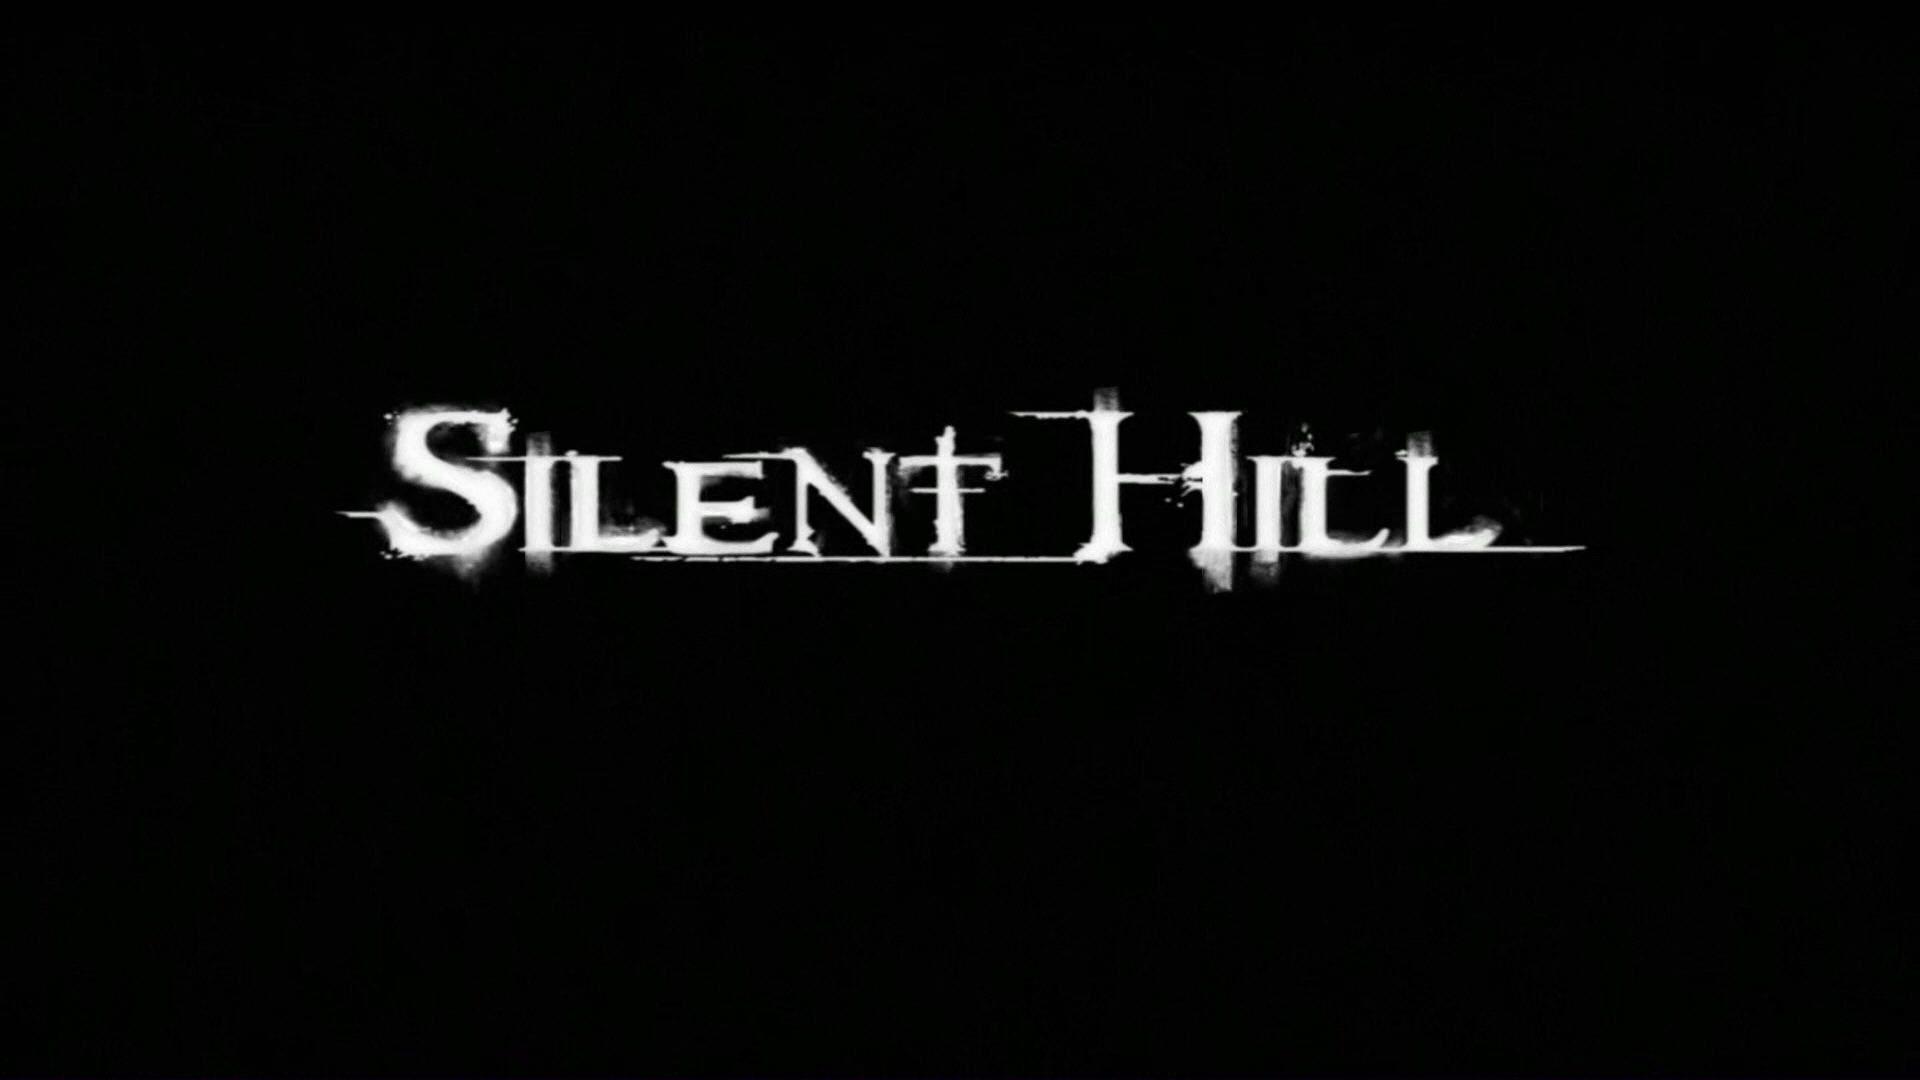 Silent Hill Computer Wallpaper, Desktop Background 1920x1080 Id